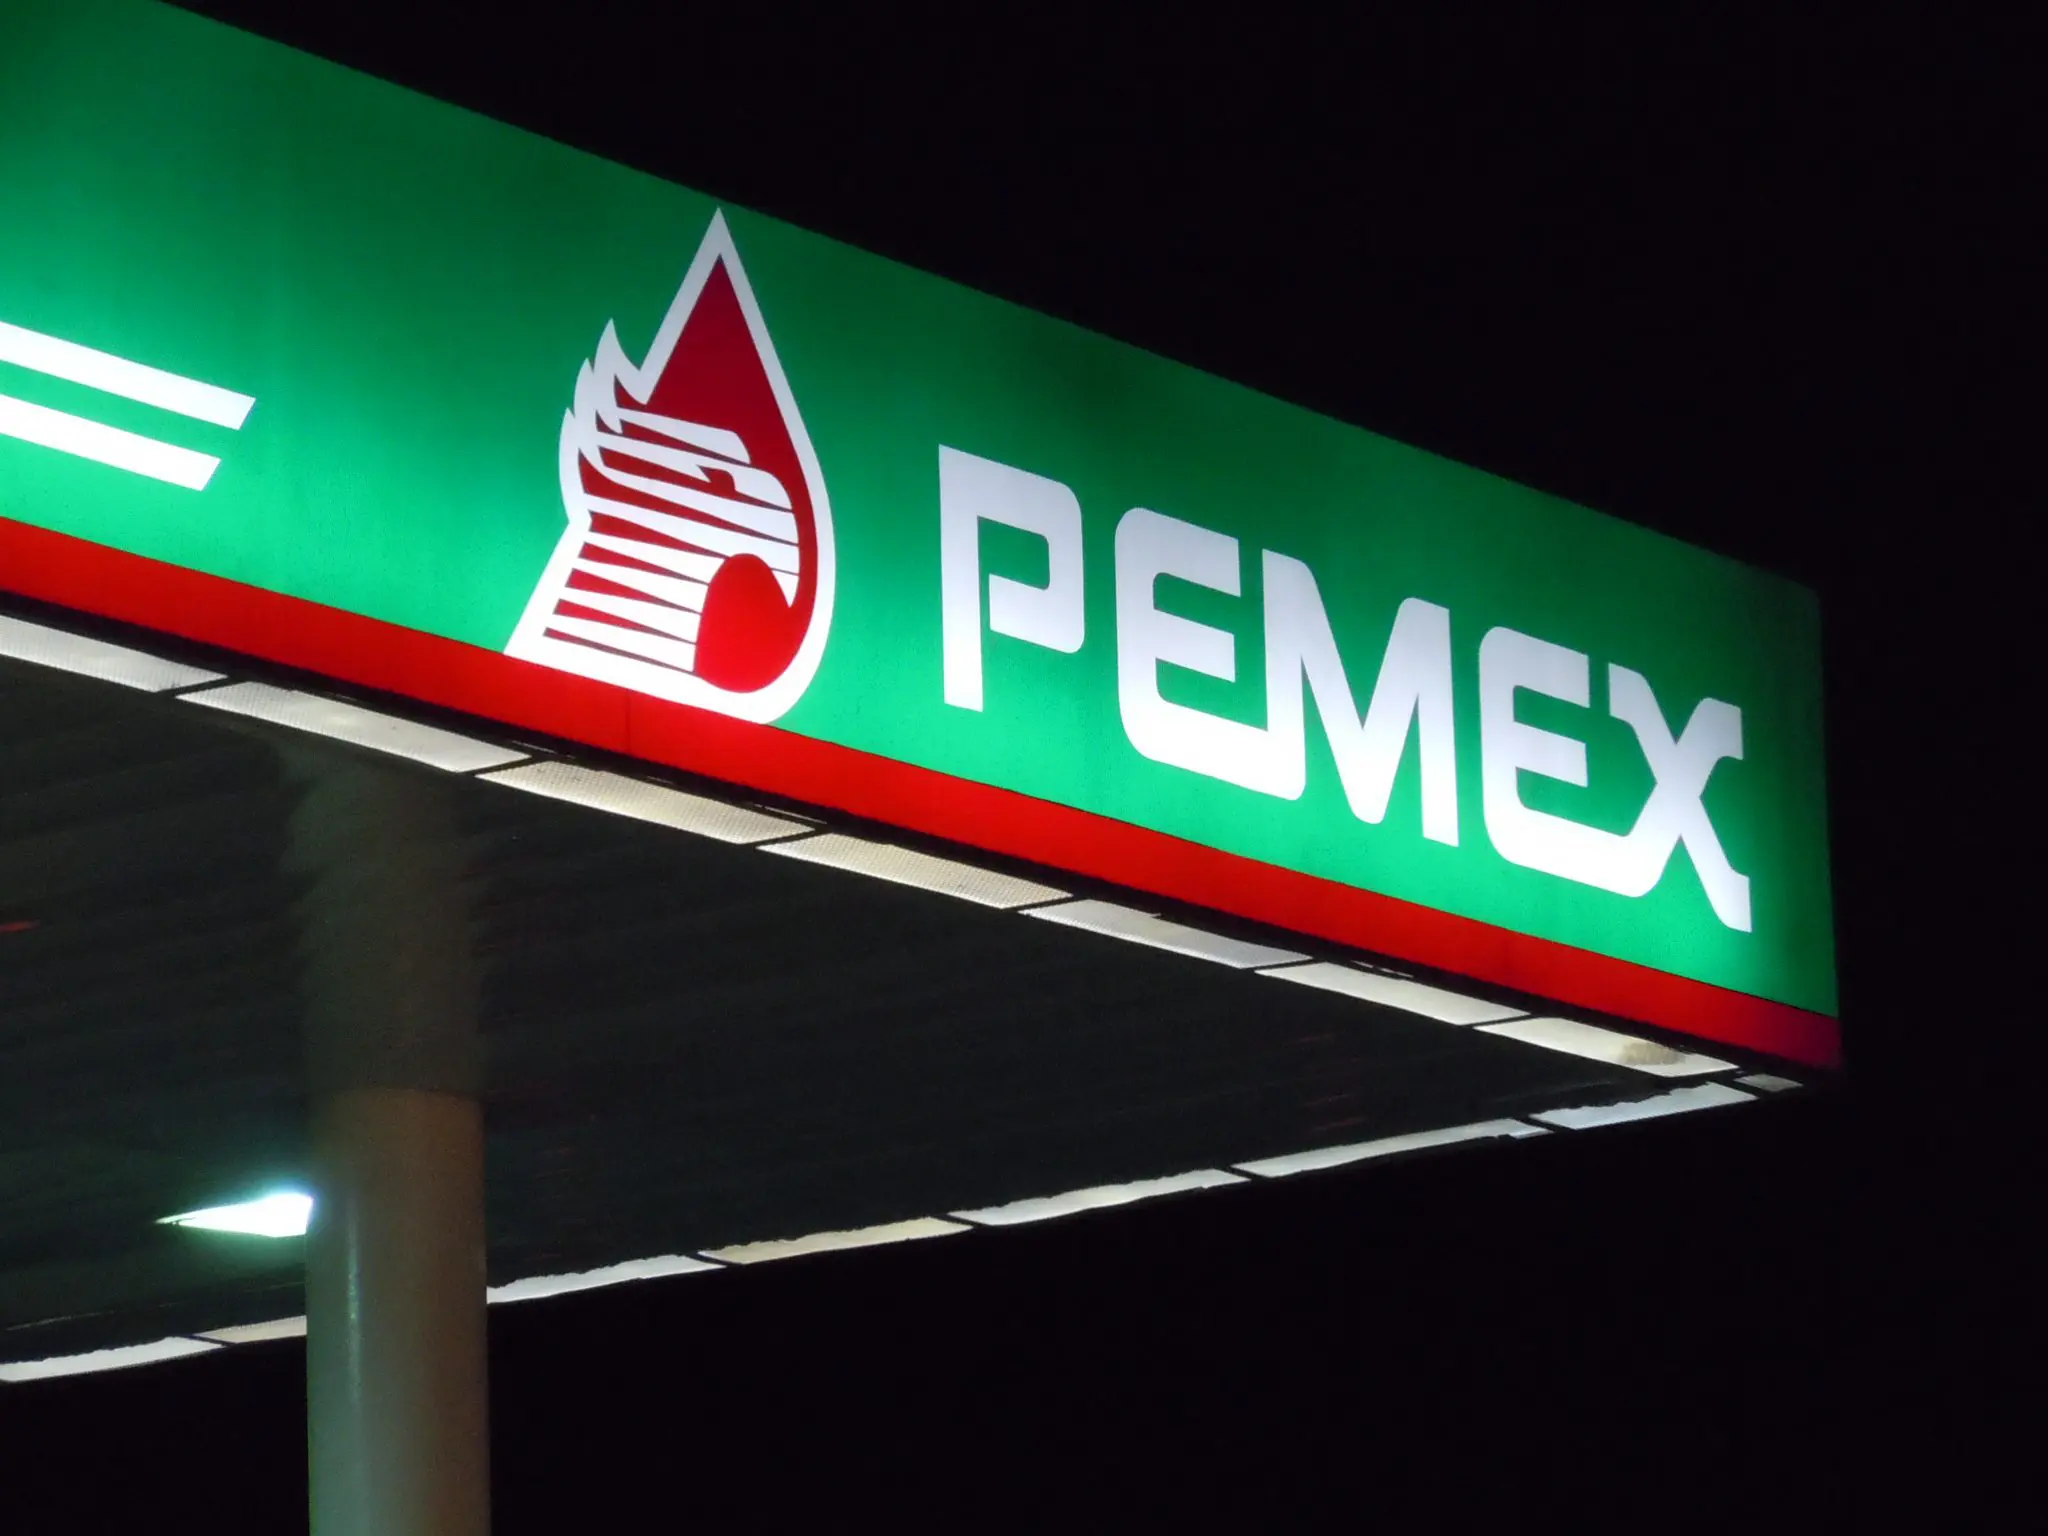 Messico, obiettivo autosufficienza energetica: dal 2023 stop alle esportazioni di petrolio